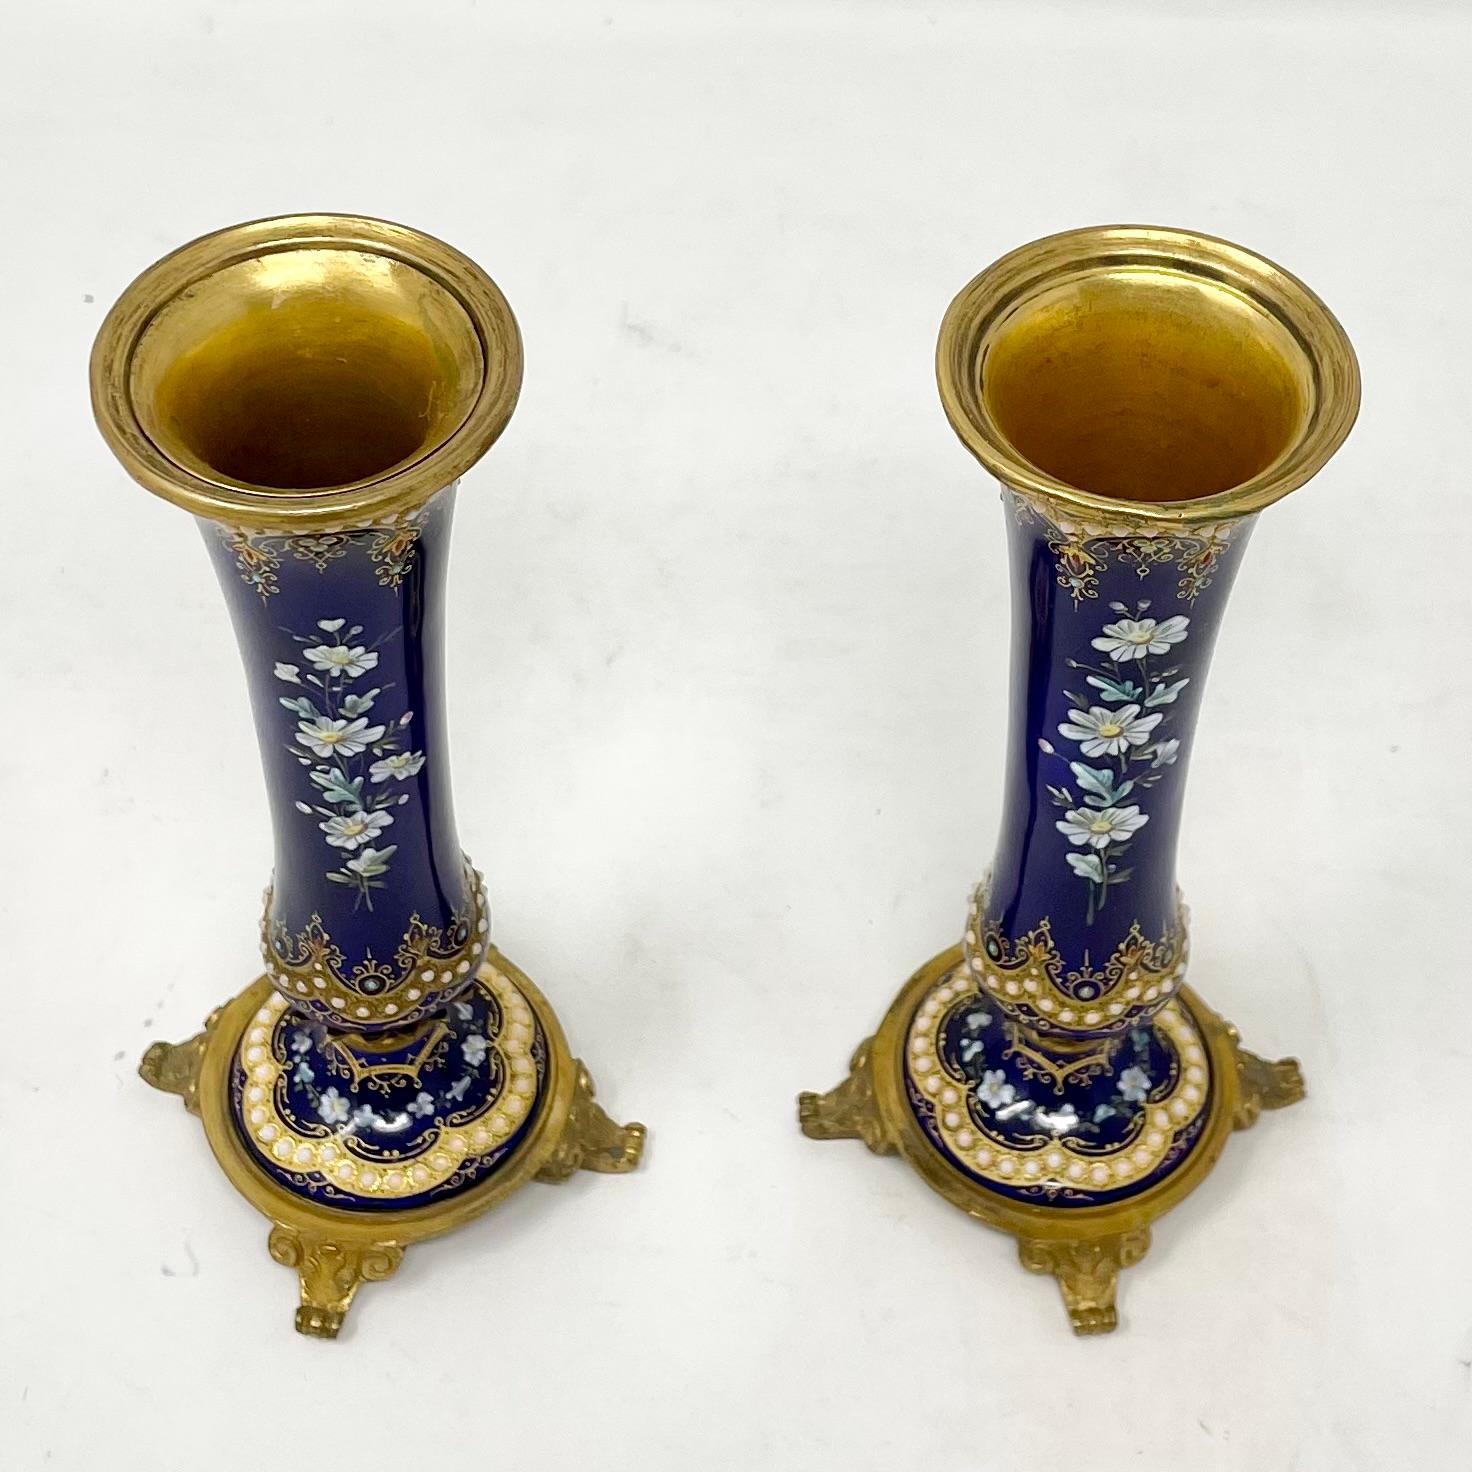 Vases en porcelaine de cobalt montés sur bronze doré Napoléon III avec émaillage, de fabrication exquise, circa 1870-1880.